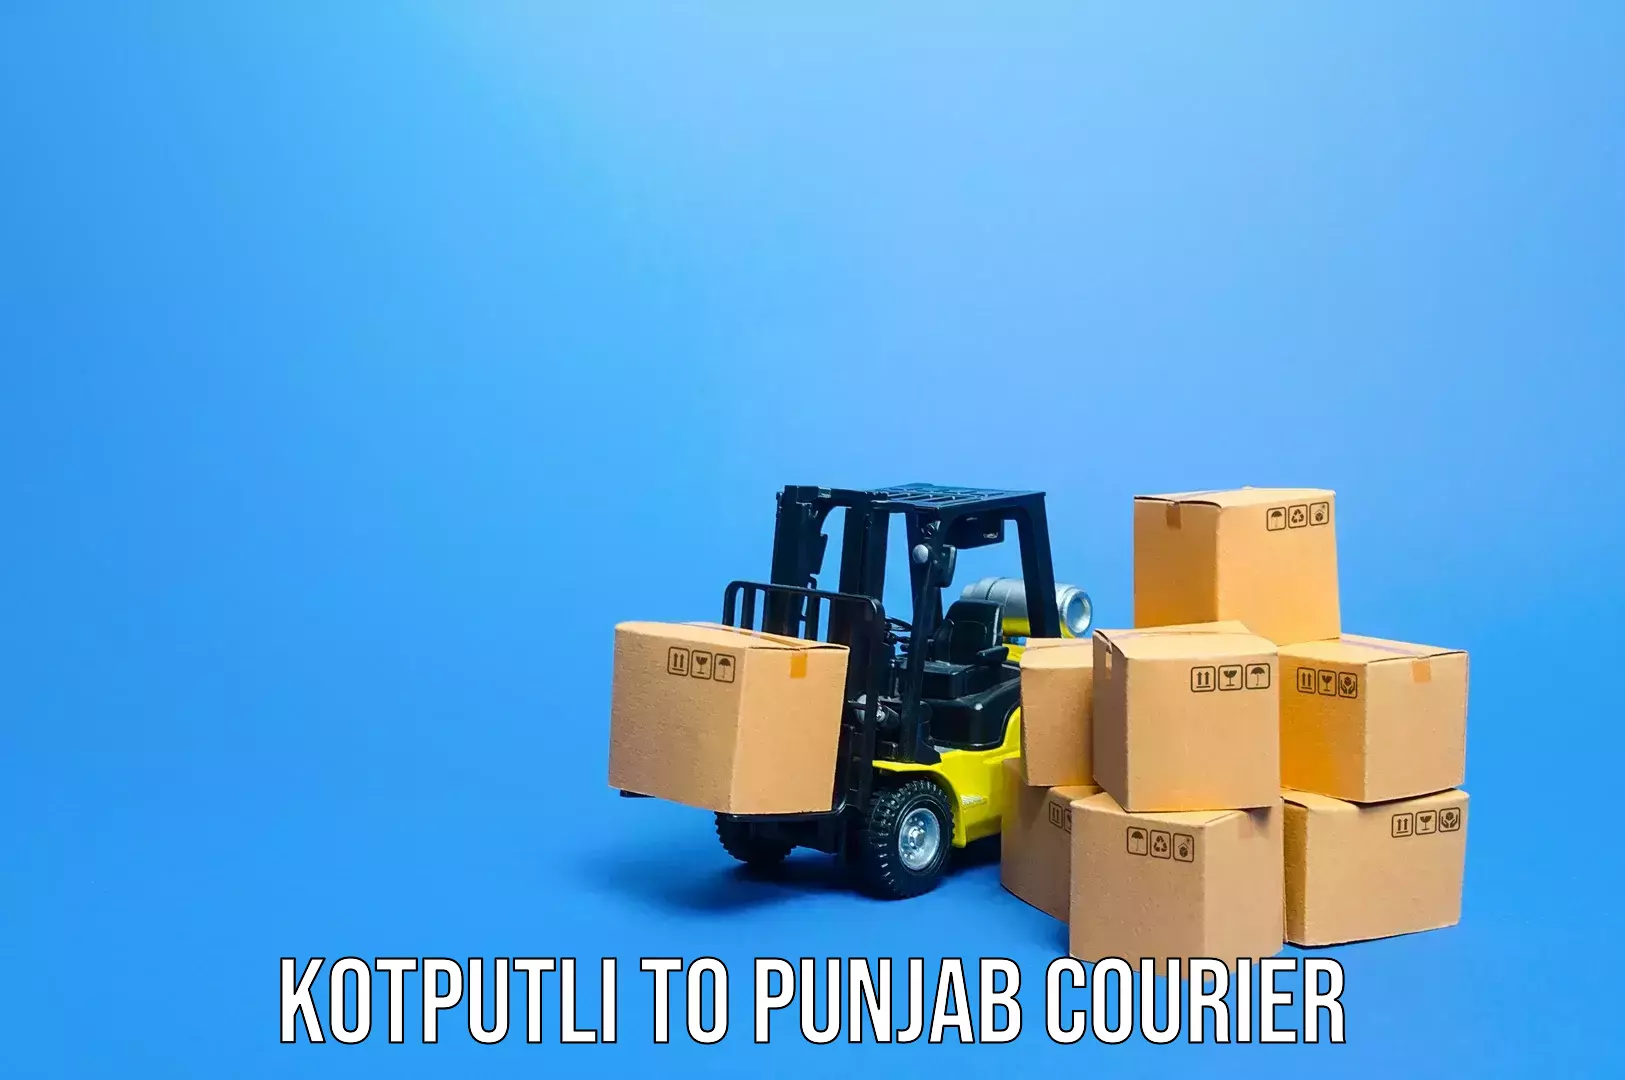 Simplified luggage transport Kotputli to Punjab